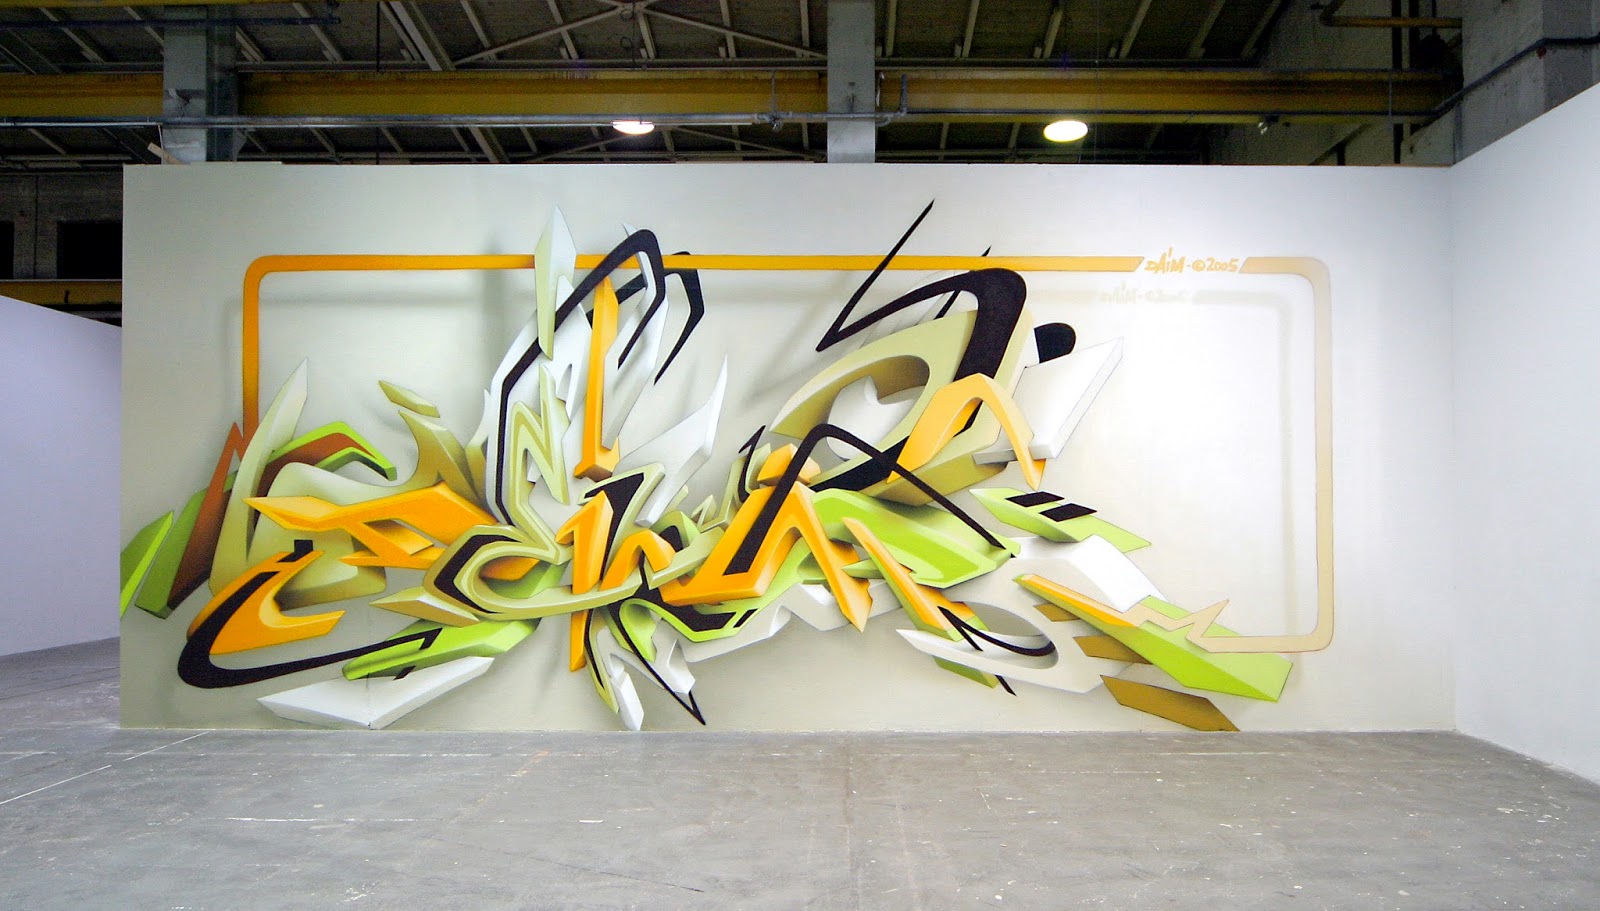 Fathonan Kumpulan Gambar Grafiti Hd Keren Walpaper Terbaru Pilox Abstrak